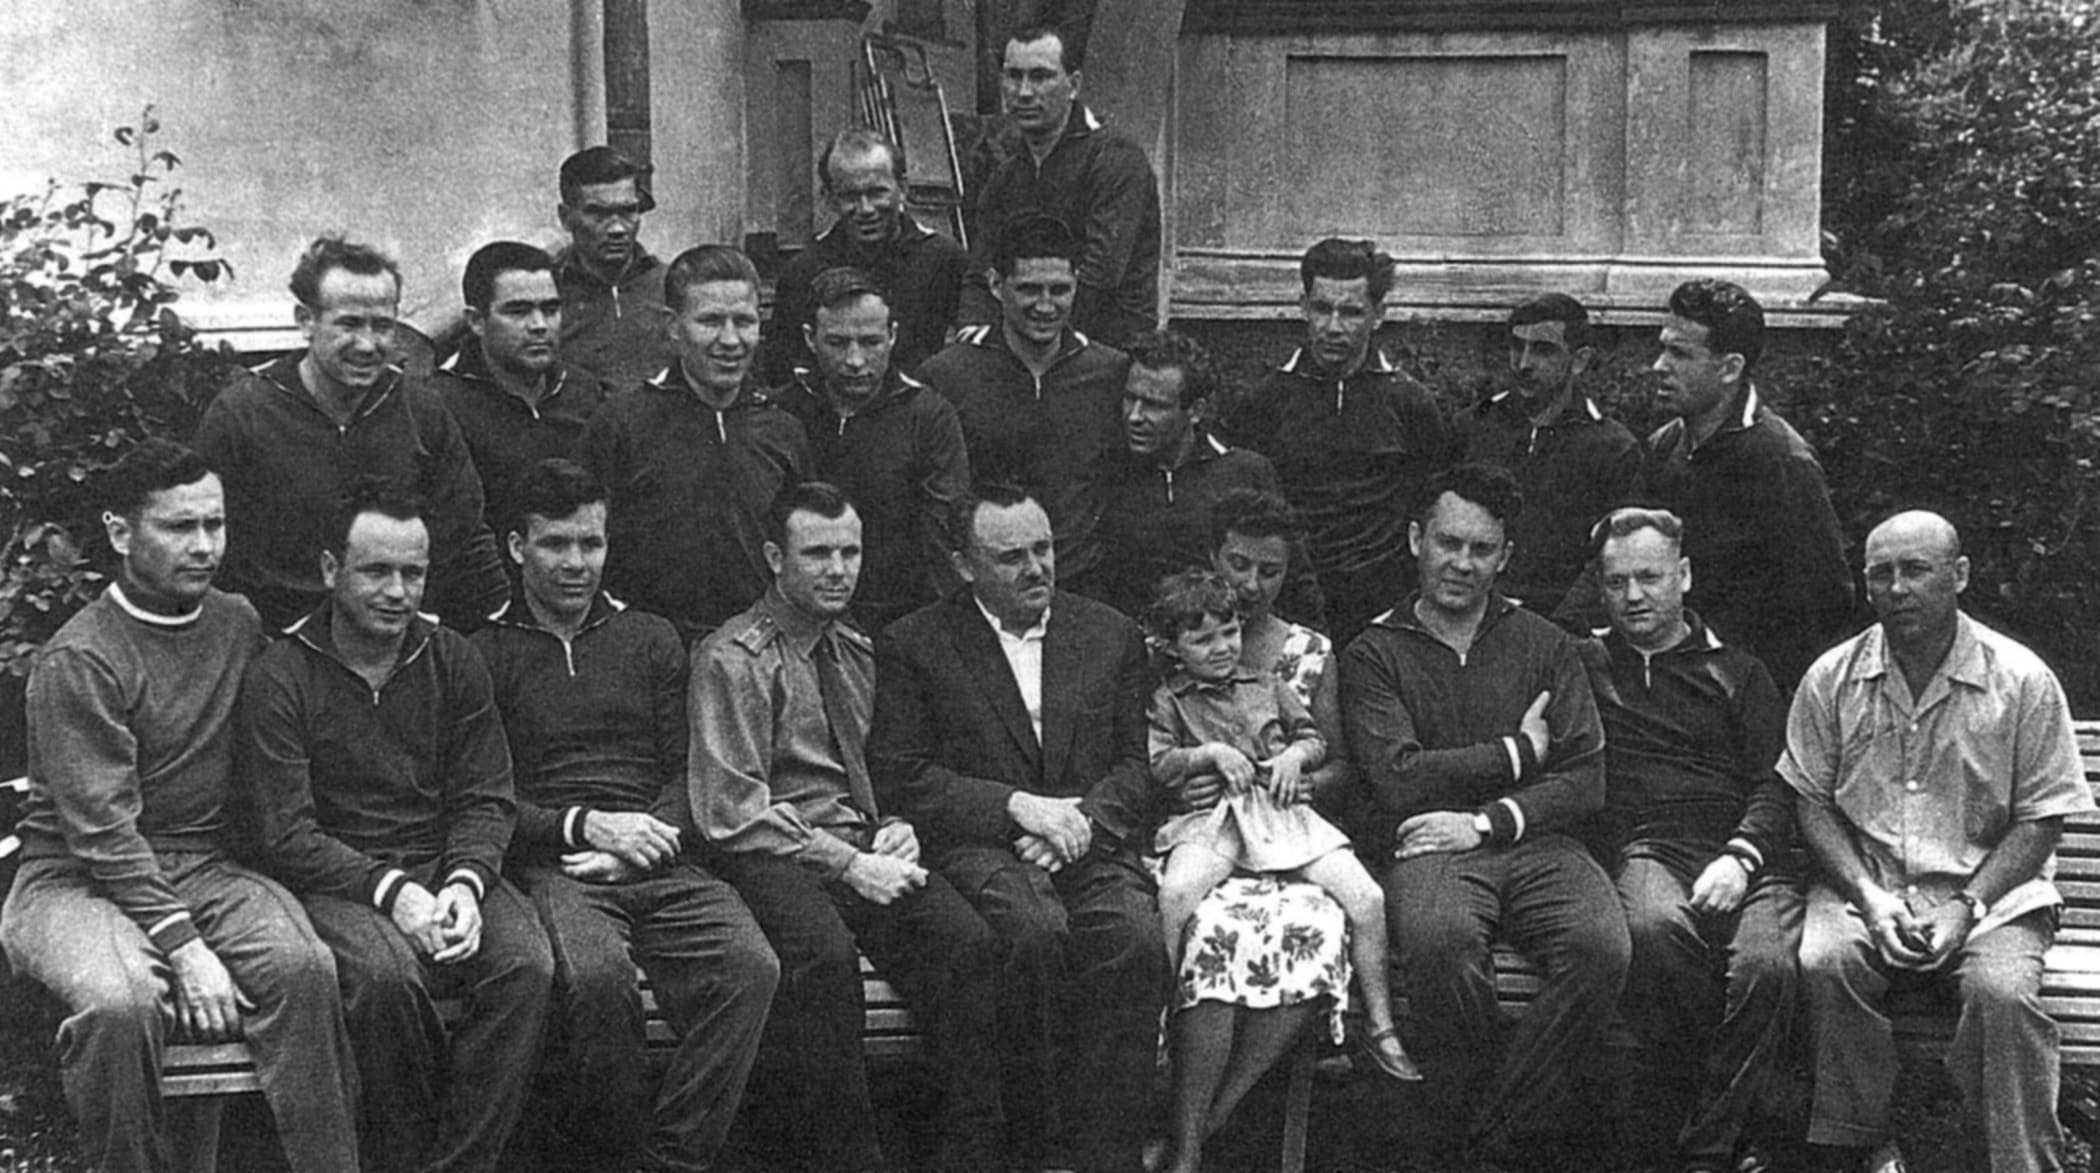 Gruppo di cosmonautici sovietici nel 1960